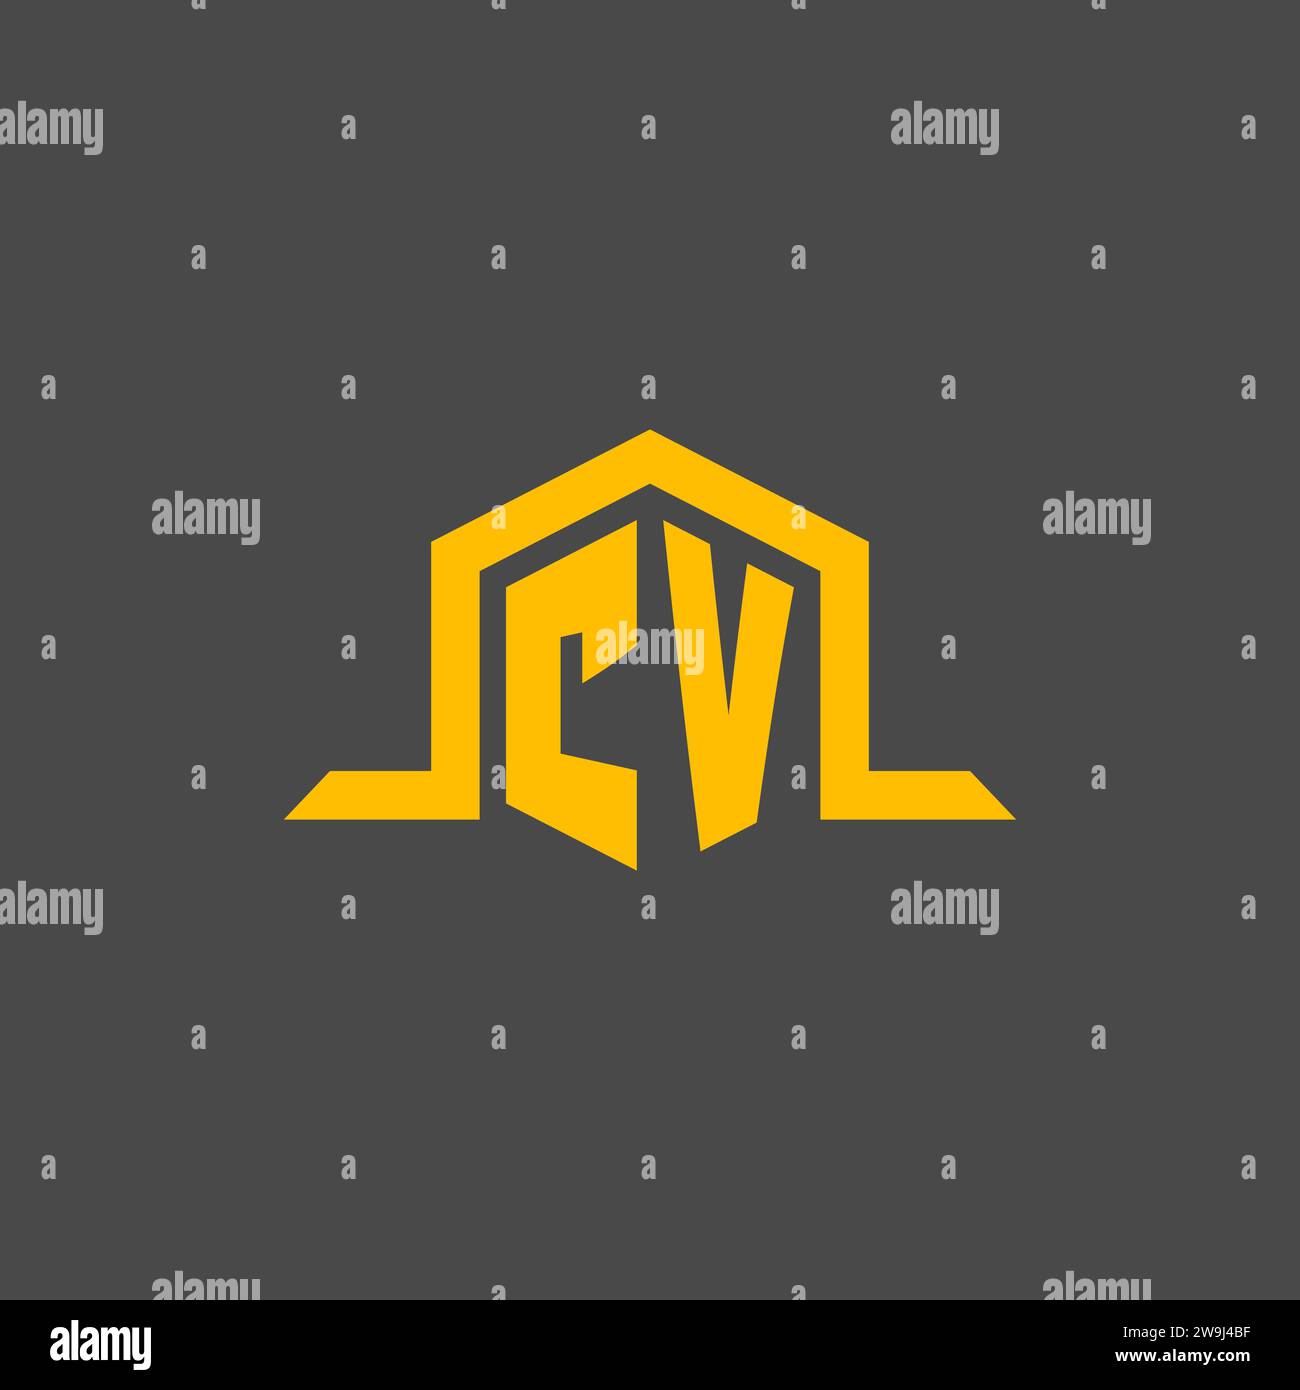 CV monogram initial logo with hexagon style design ideas Stock Vector